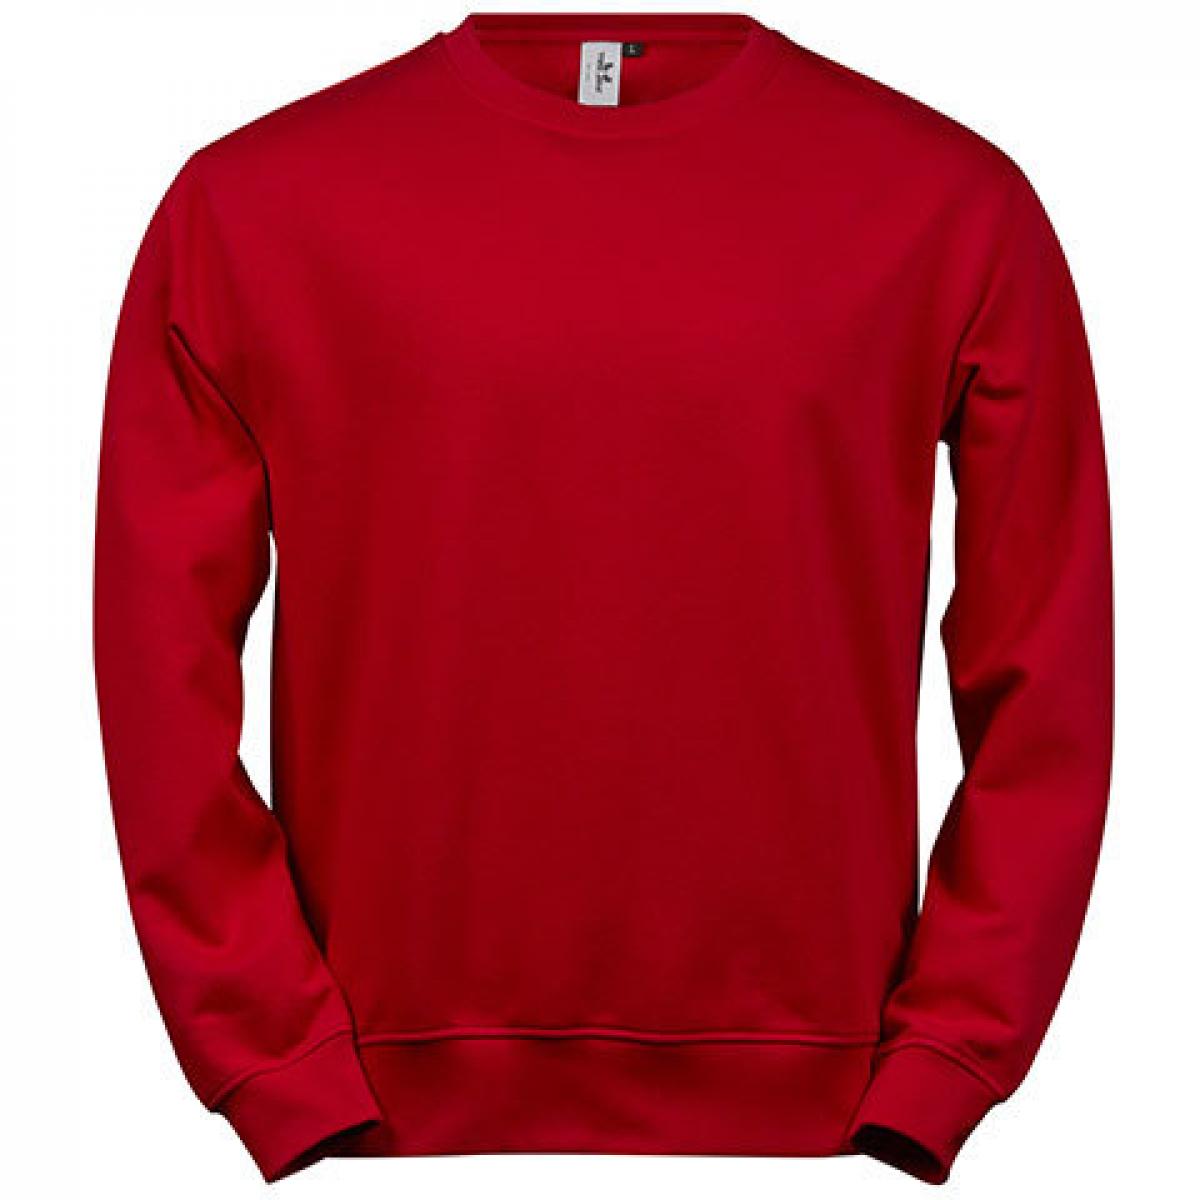 Hersteller: Tee Jays Herstellernummer: 5100 Artikelbezeichnung: Power Sweatshirt - Waschbar bis 60 °C Farbe: Red